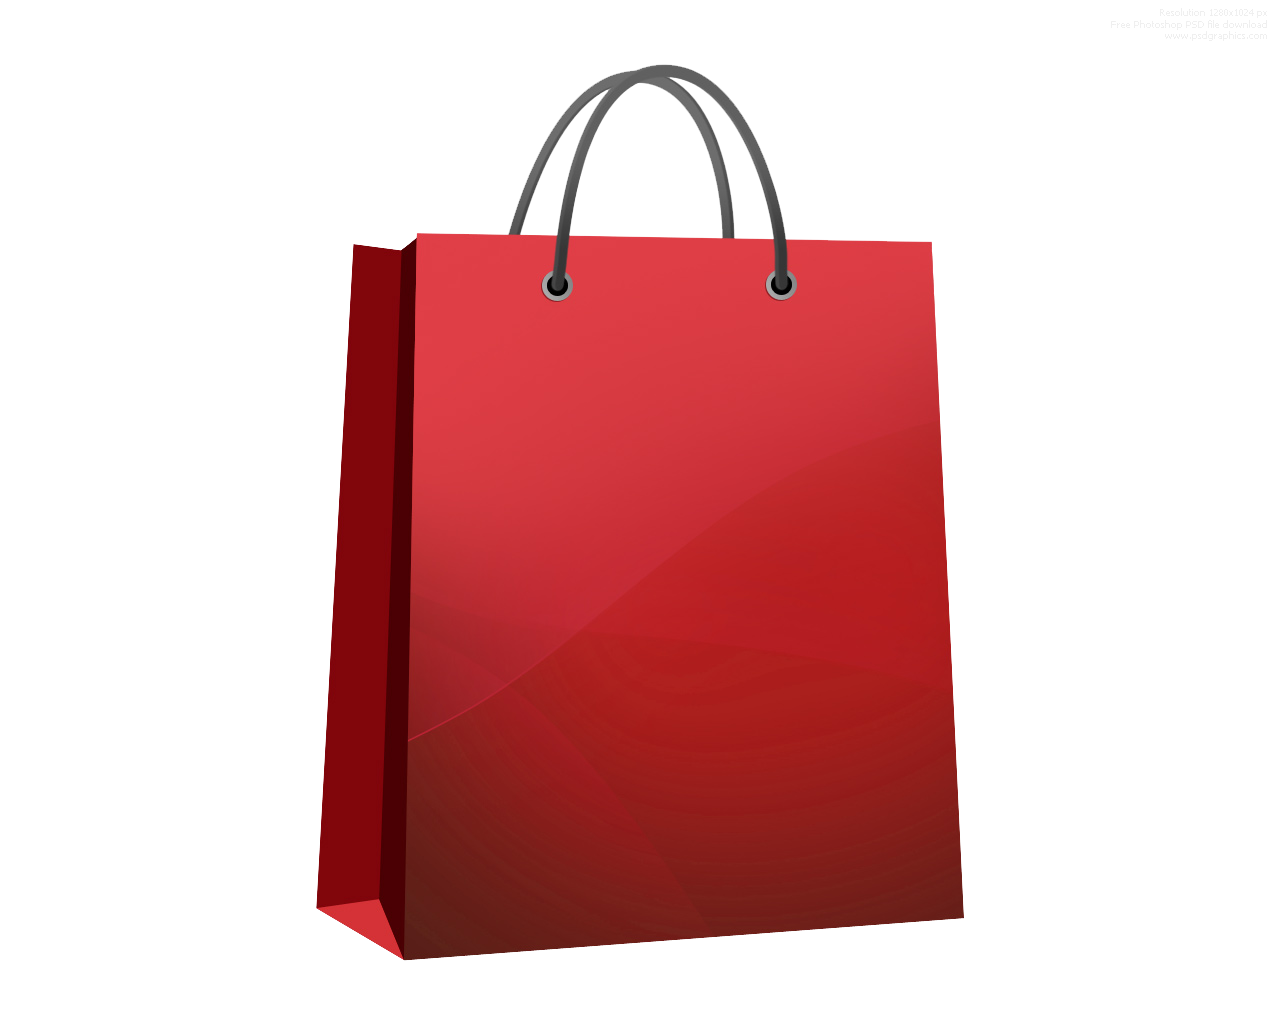 Shoppingbag HD PNG - 119990